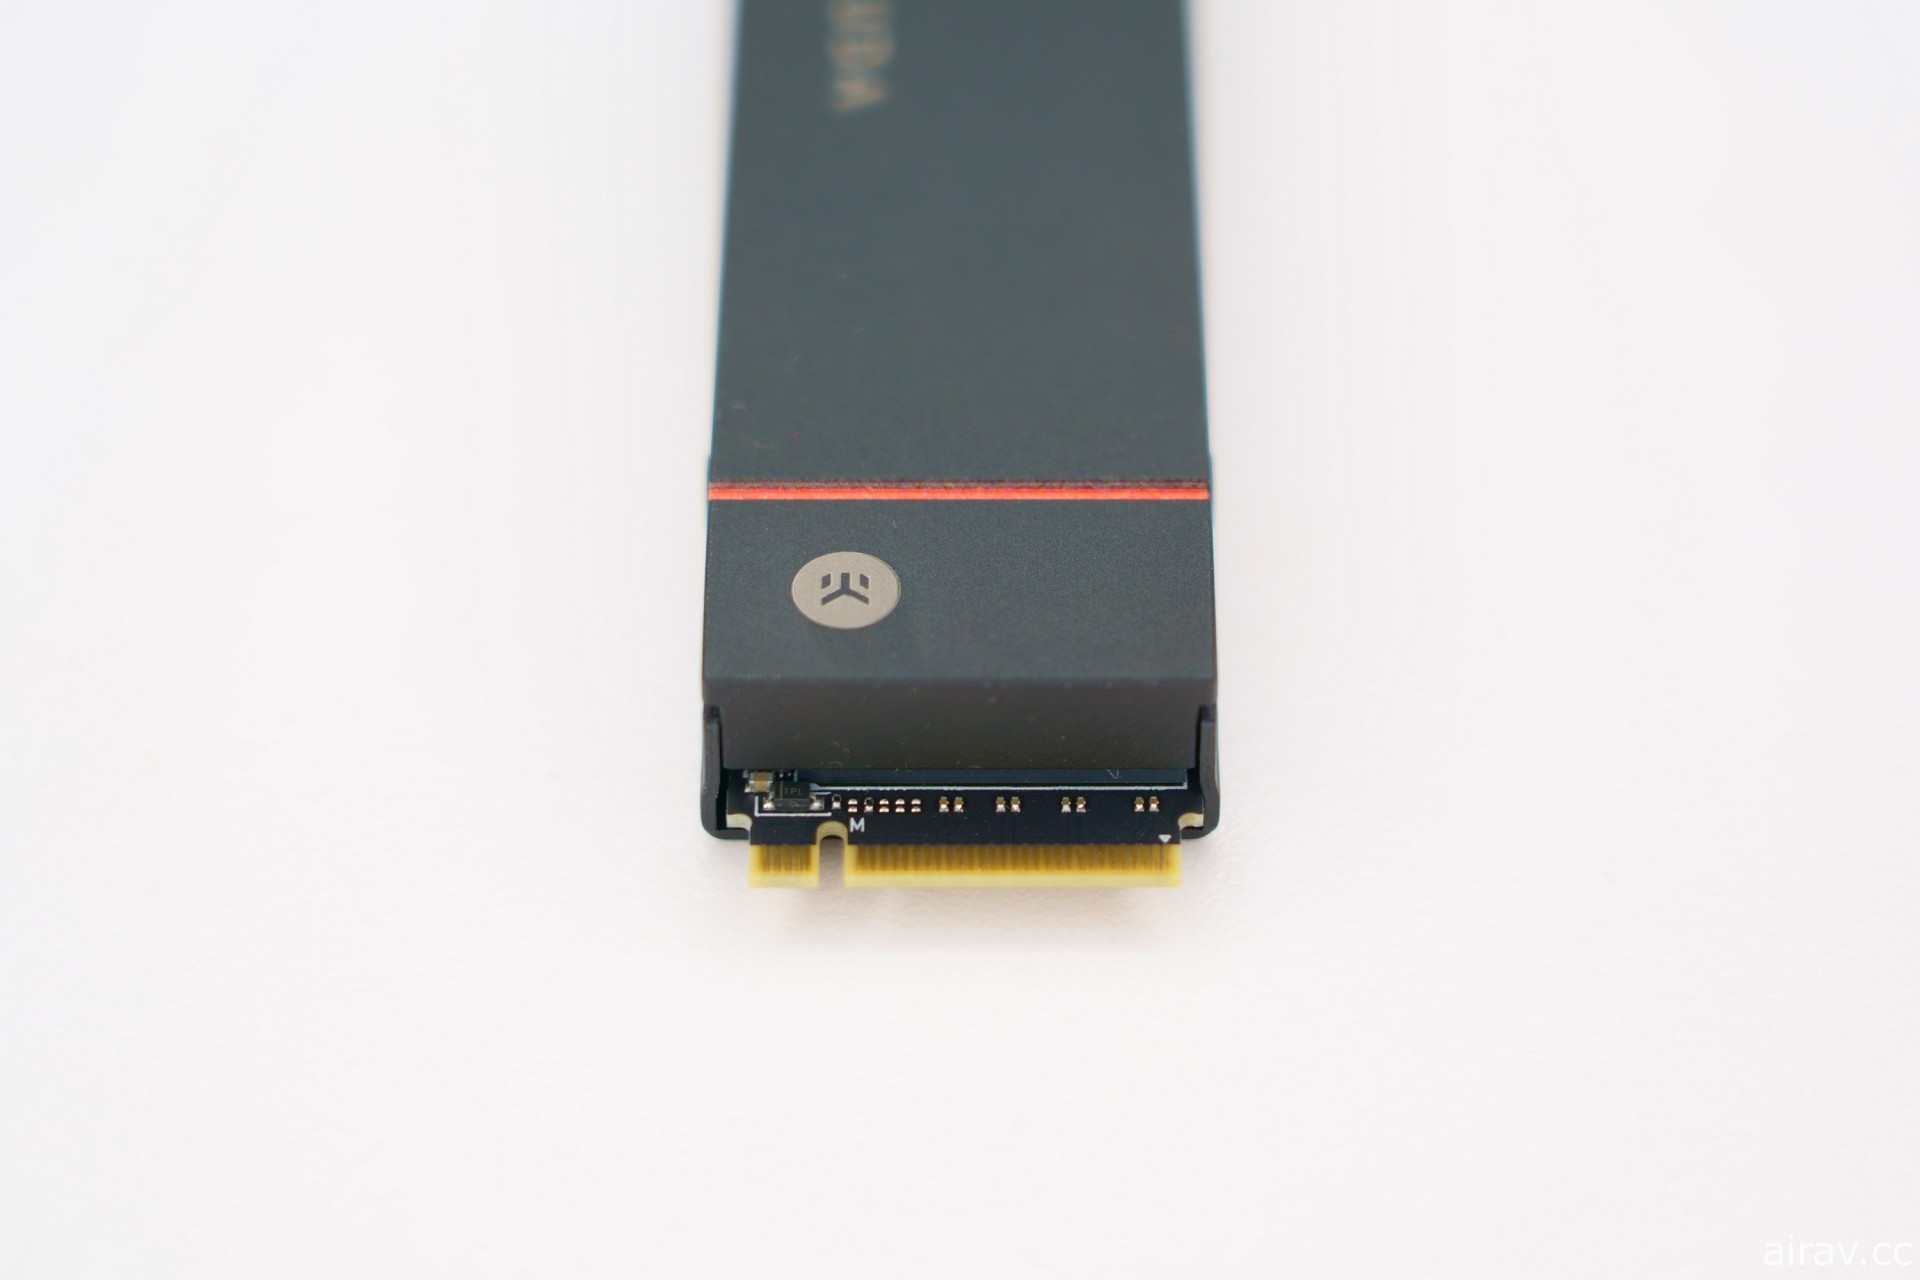 希捷 FireCuda 530 SSD 散熱器版 4TB PS5 實裝開箱報導 超高速大容量暢享遊戲樂趣